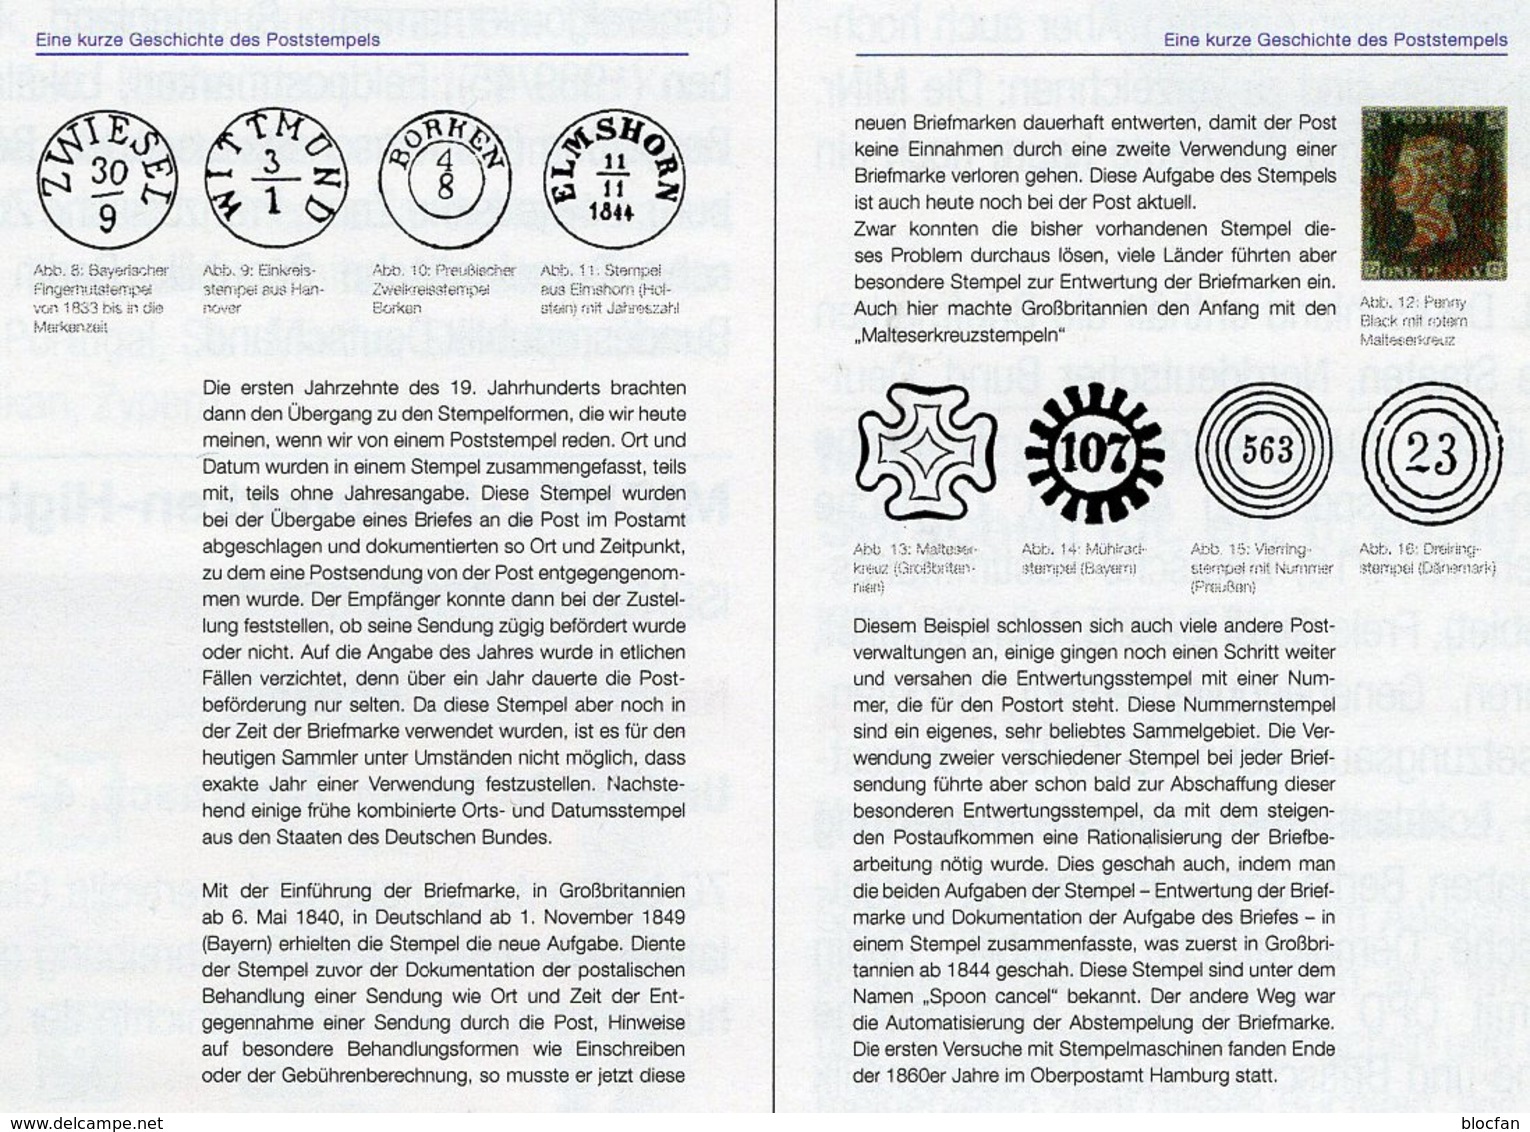 Stempel Verstehen Ratgeber 2020 New 50€ MICHEL Briefmarken Stempelarten Wert Bestimmen Stamps ISBN978 3 95402 252 6 - Philatélie